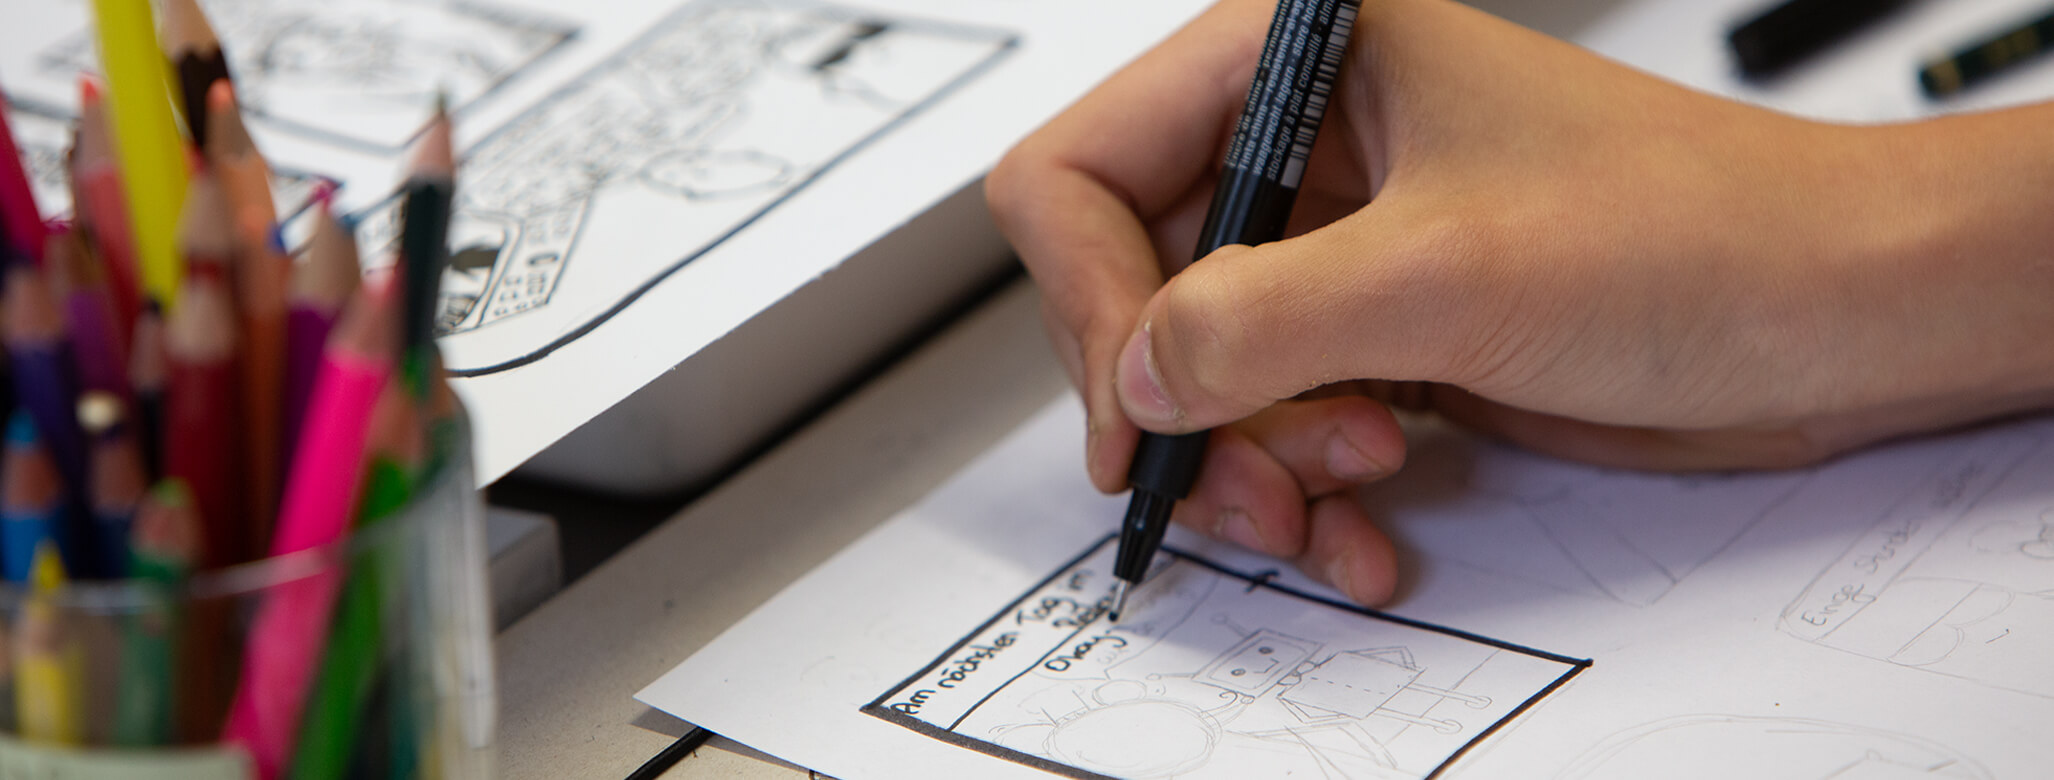 Comic Zeichenkurs für kinder und Jugendliche in Wien bei studio linea